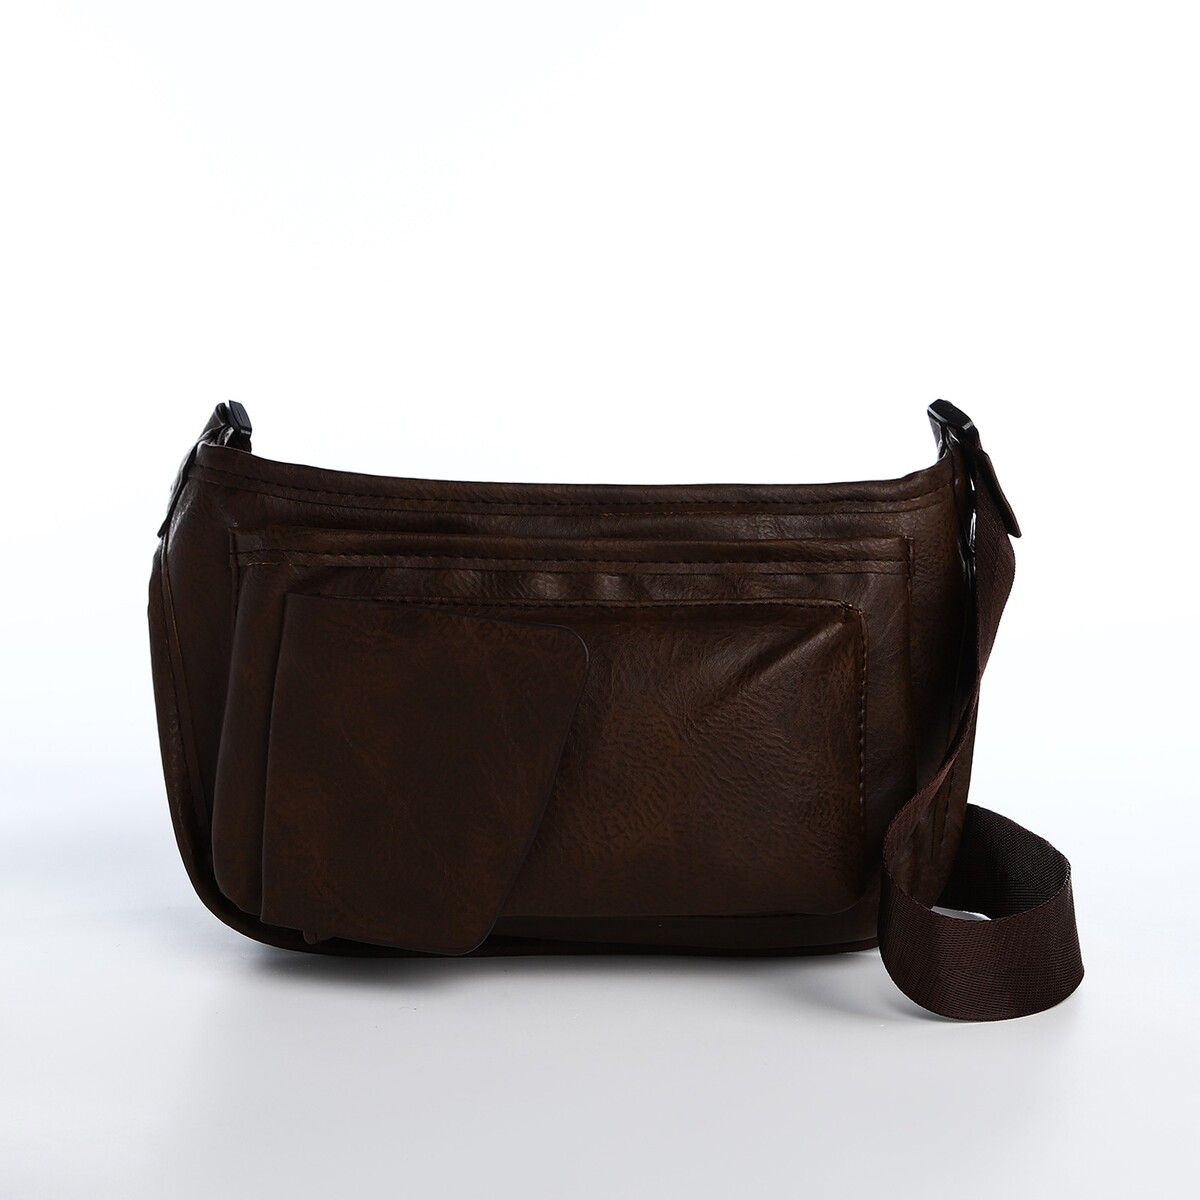 Поясная сумка на молнии, 3 наружных кармана, цвет коричневый